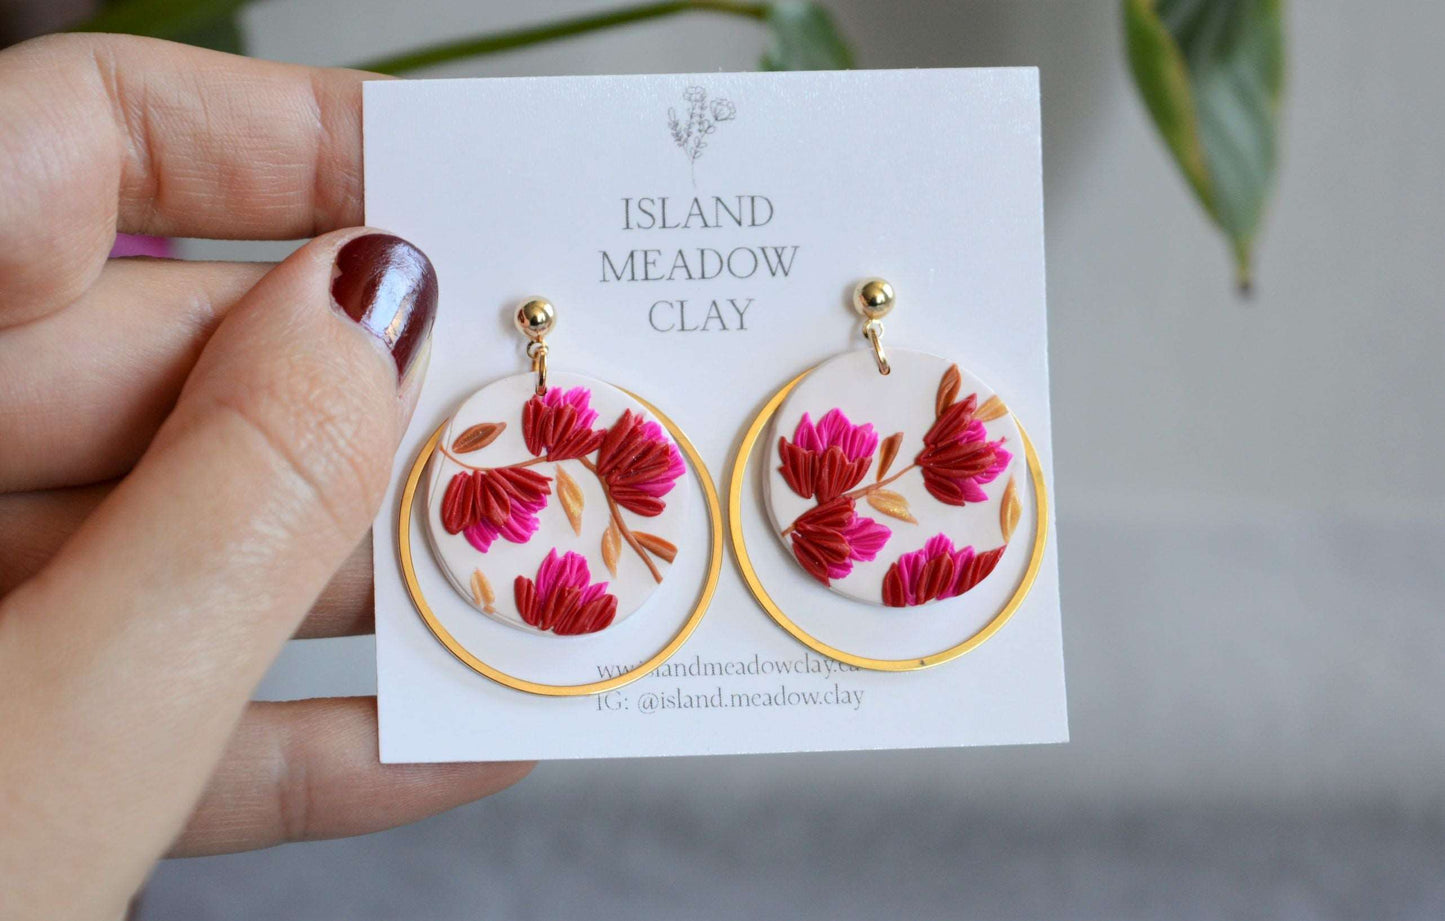 Bridesmaid Edition Clay Earrings - Autumn Island Meadow Clay